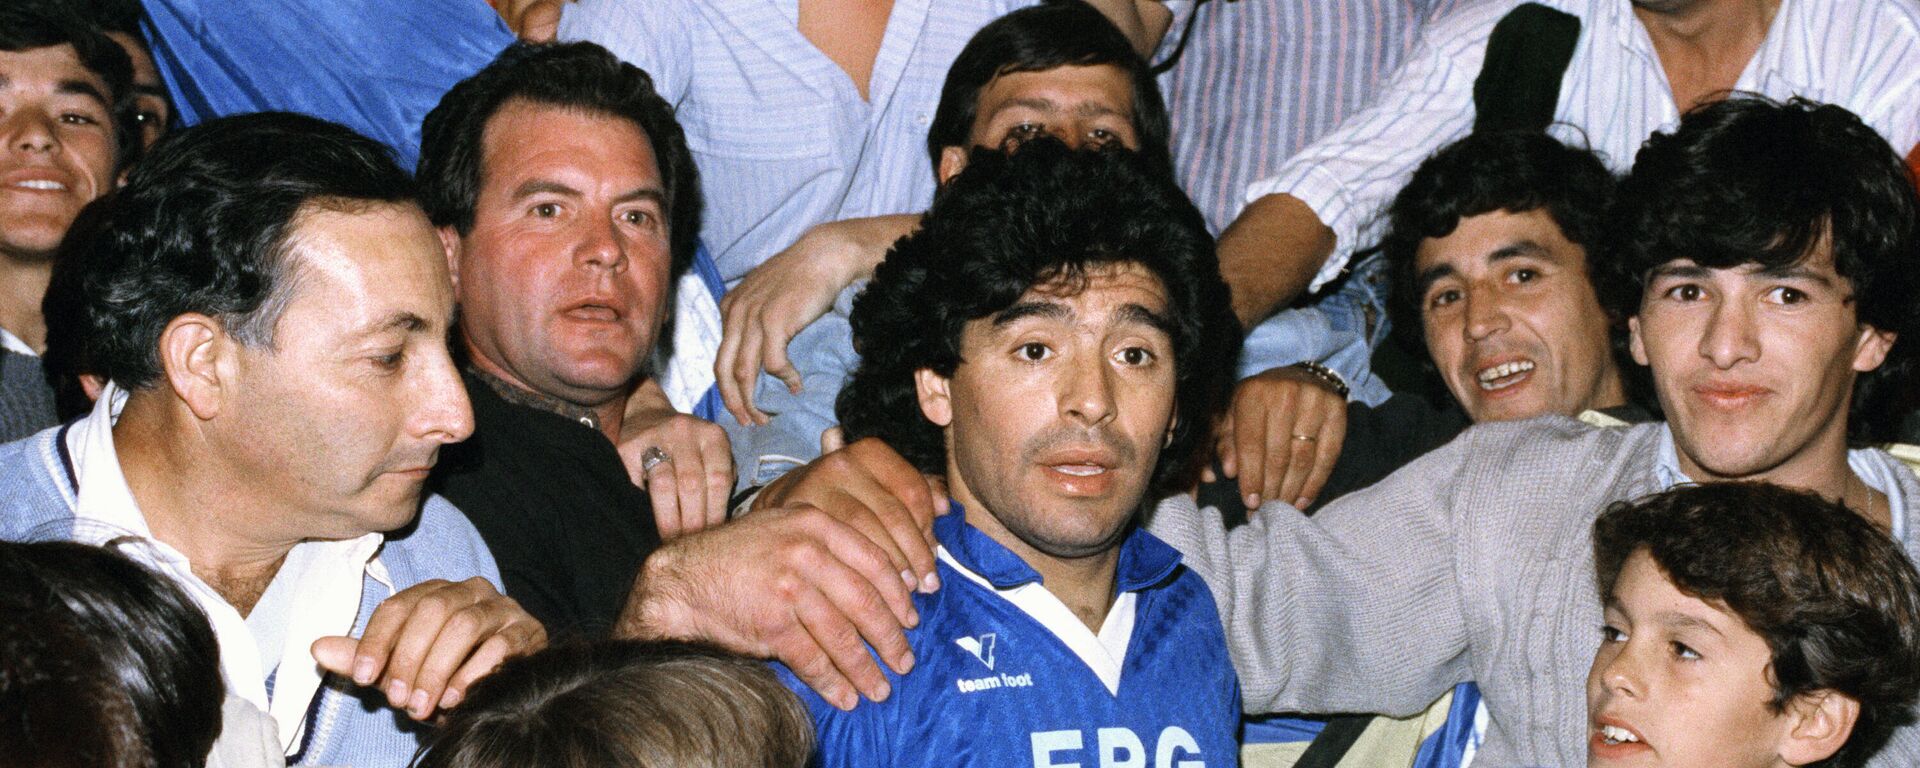 Diego Maradona rodeado de fanáticos durante un evento benéfico en Buenos Aires en 1991 - Sputnik Mundo, 1920, 25.11.2021